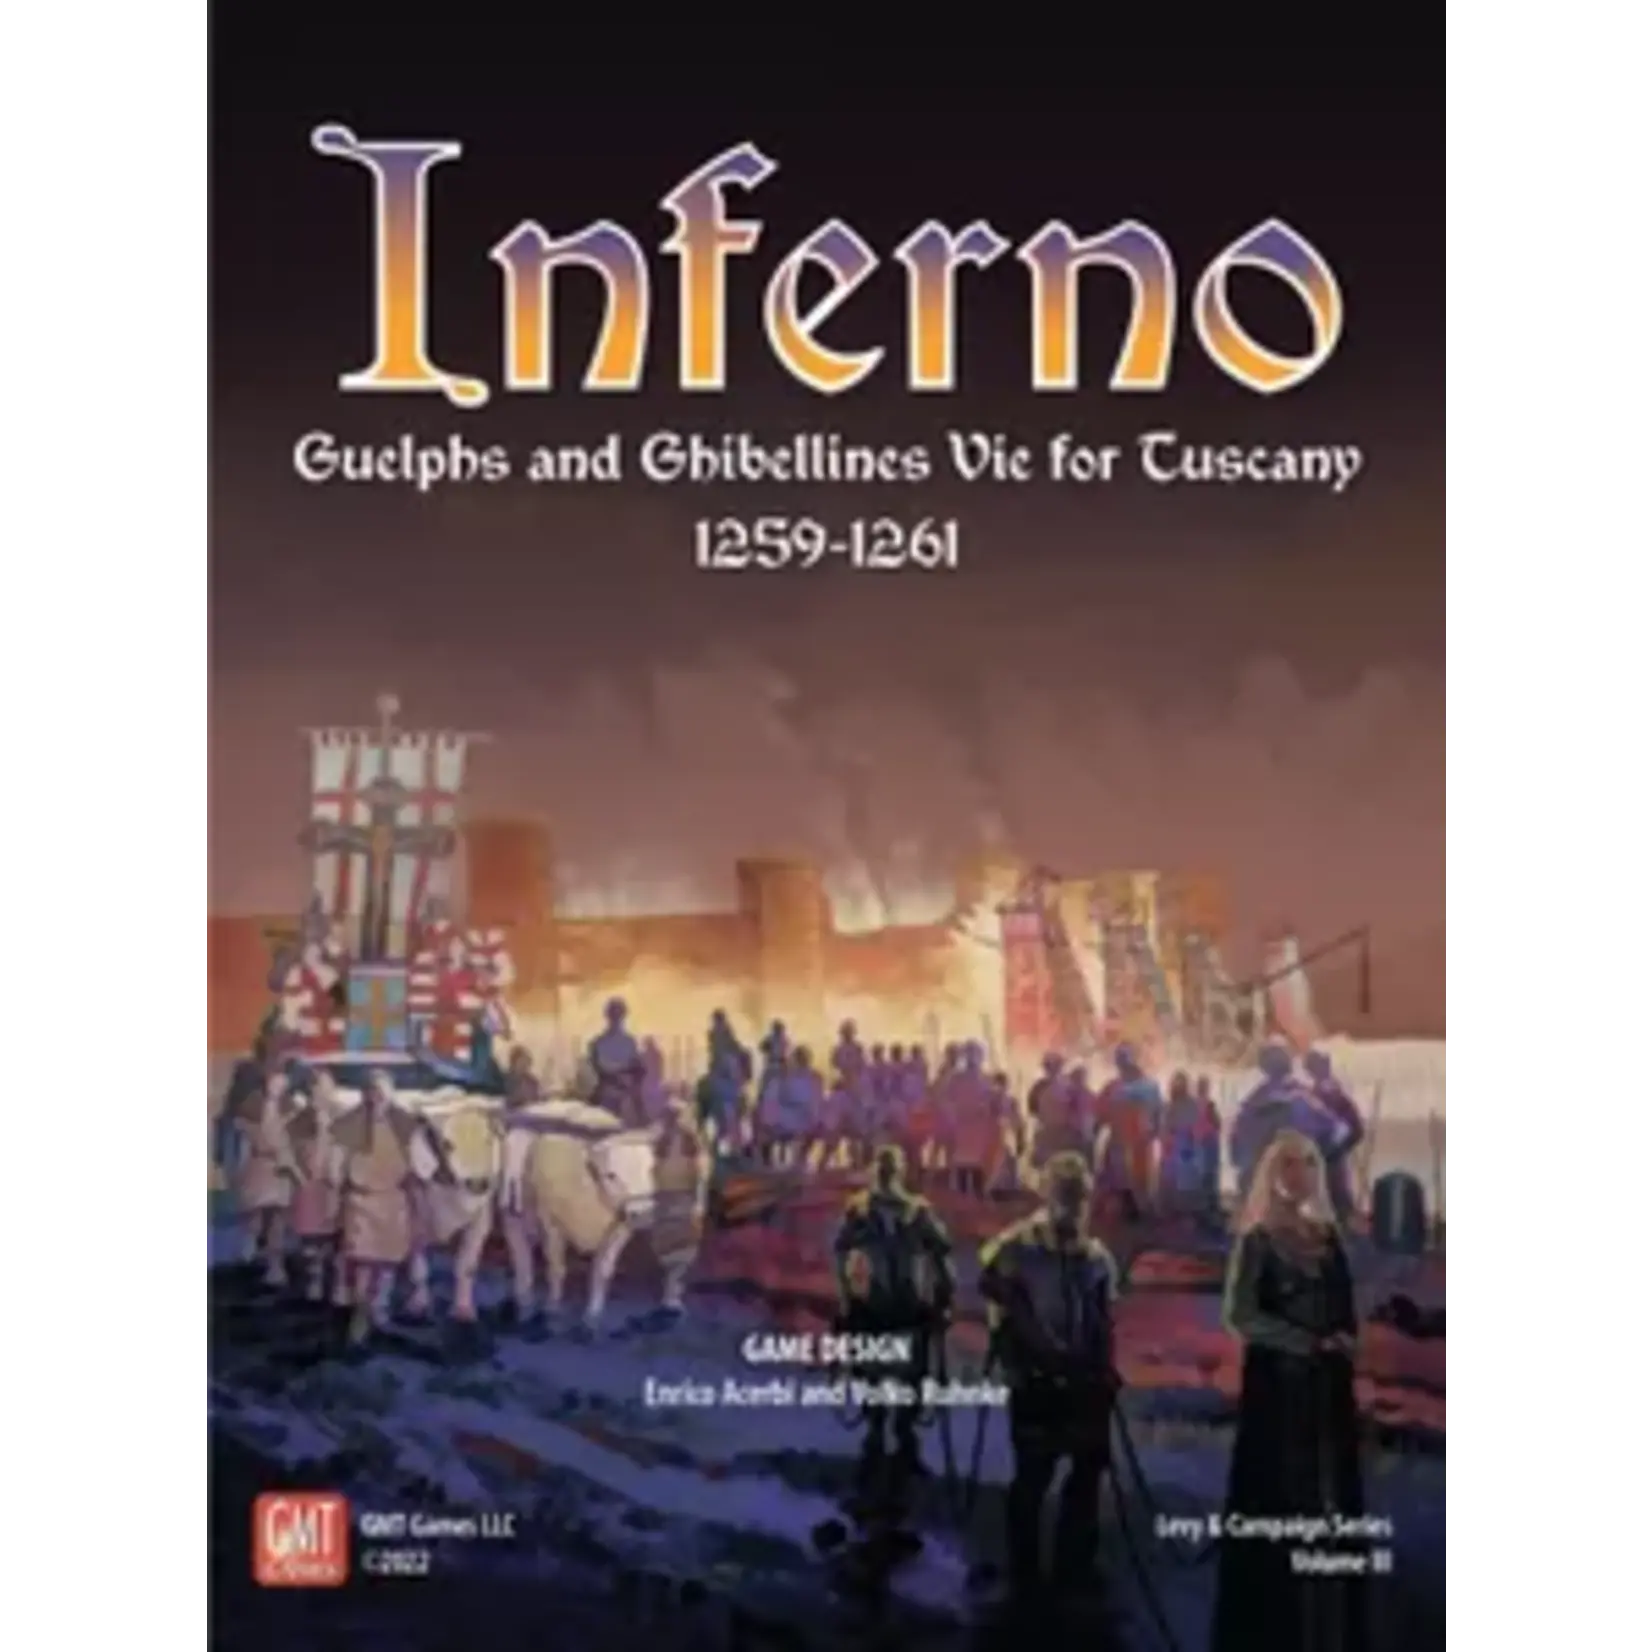 GMT Games Inferno - Boardgame - EN